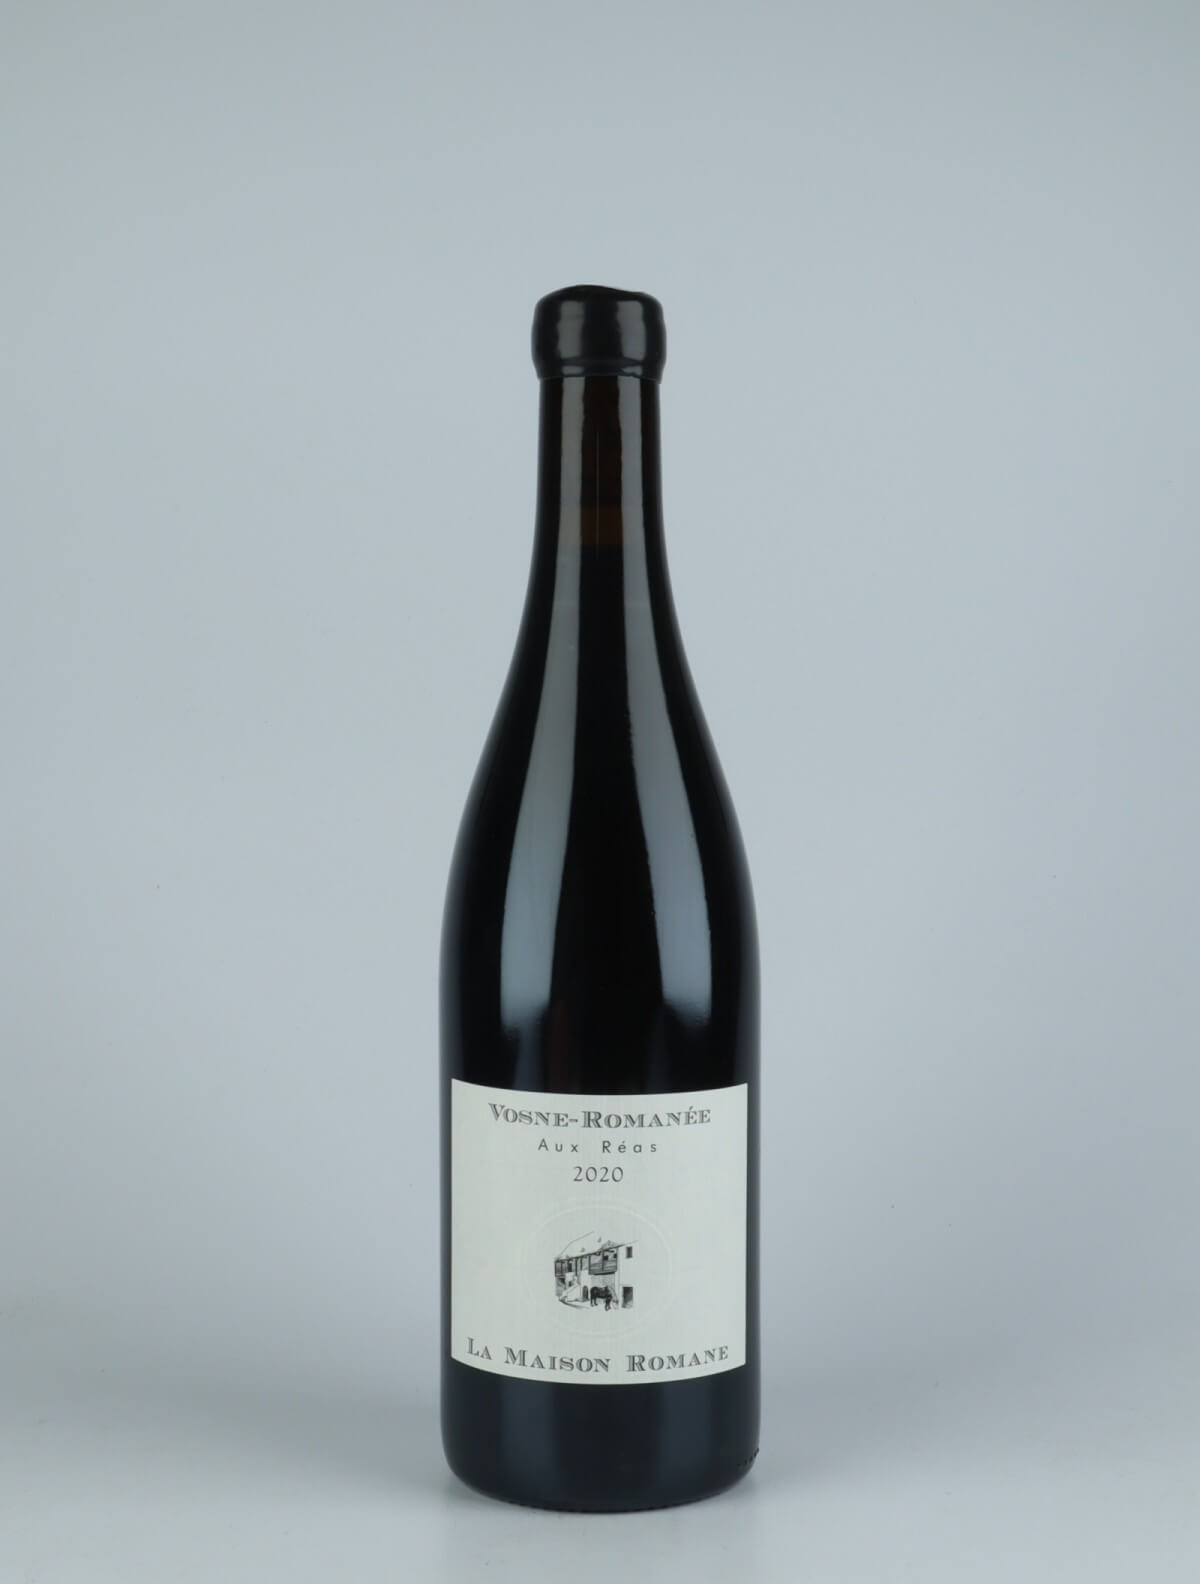 A bottle 2020 Vosne Romanée - Aux Réas Red wine from La Maison Romane, Burgundy in France